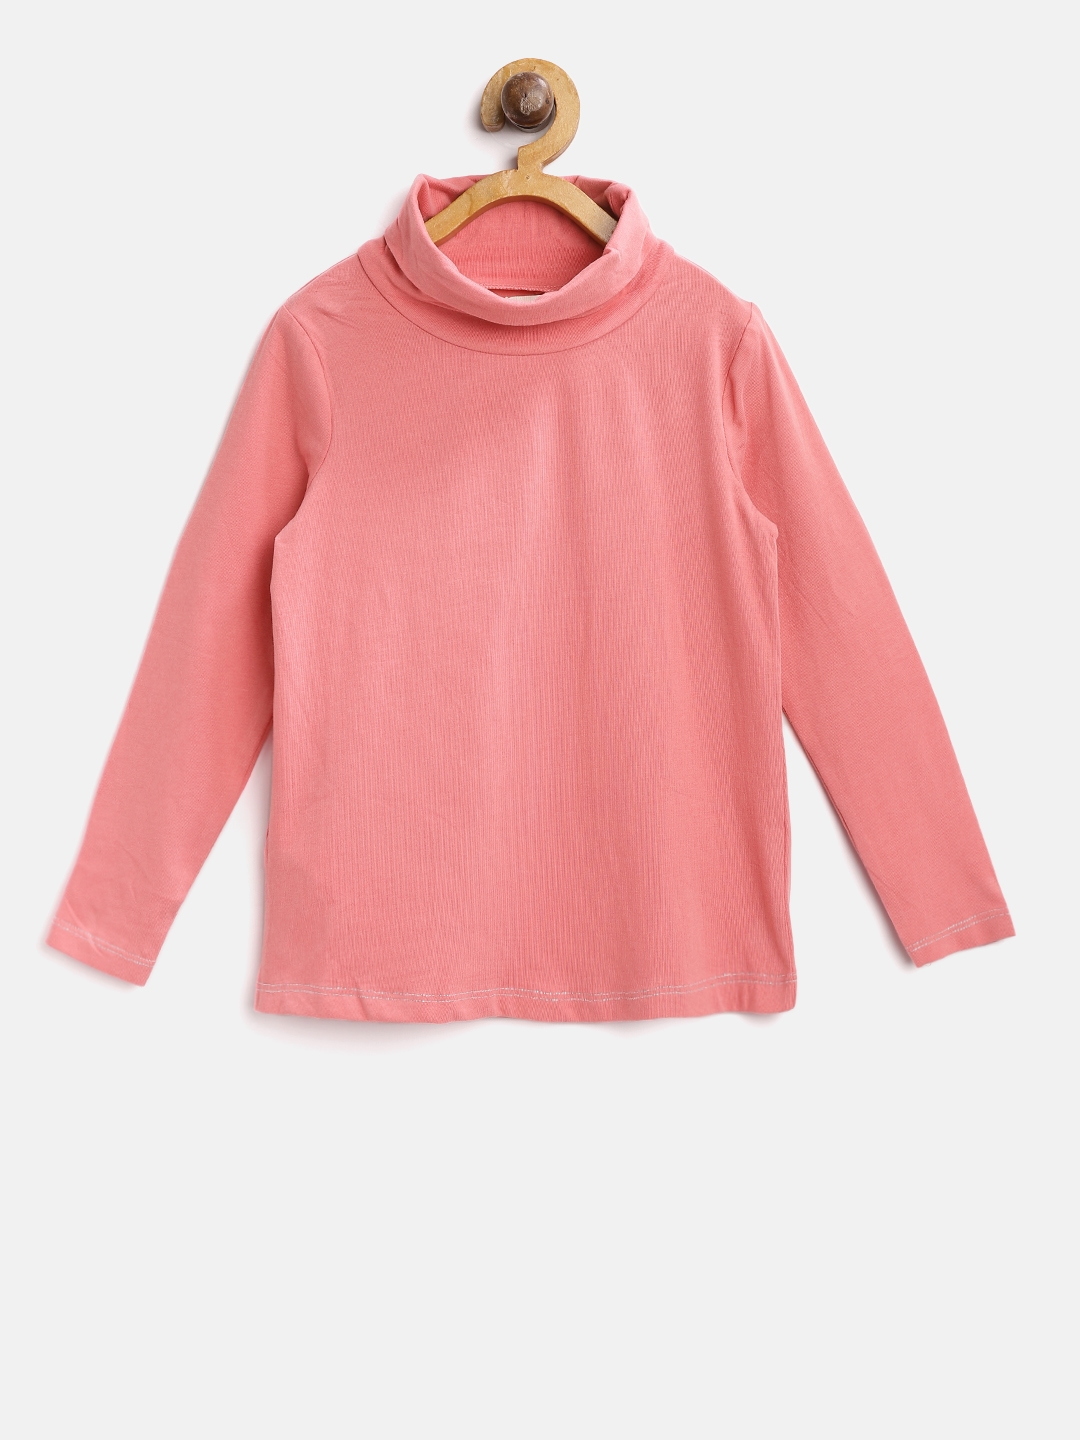 Spring&Gege Little & Big Kids Soft Cotton Long Sleeve Mock Turtleneck Shirts 